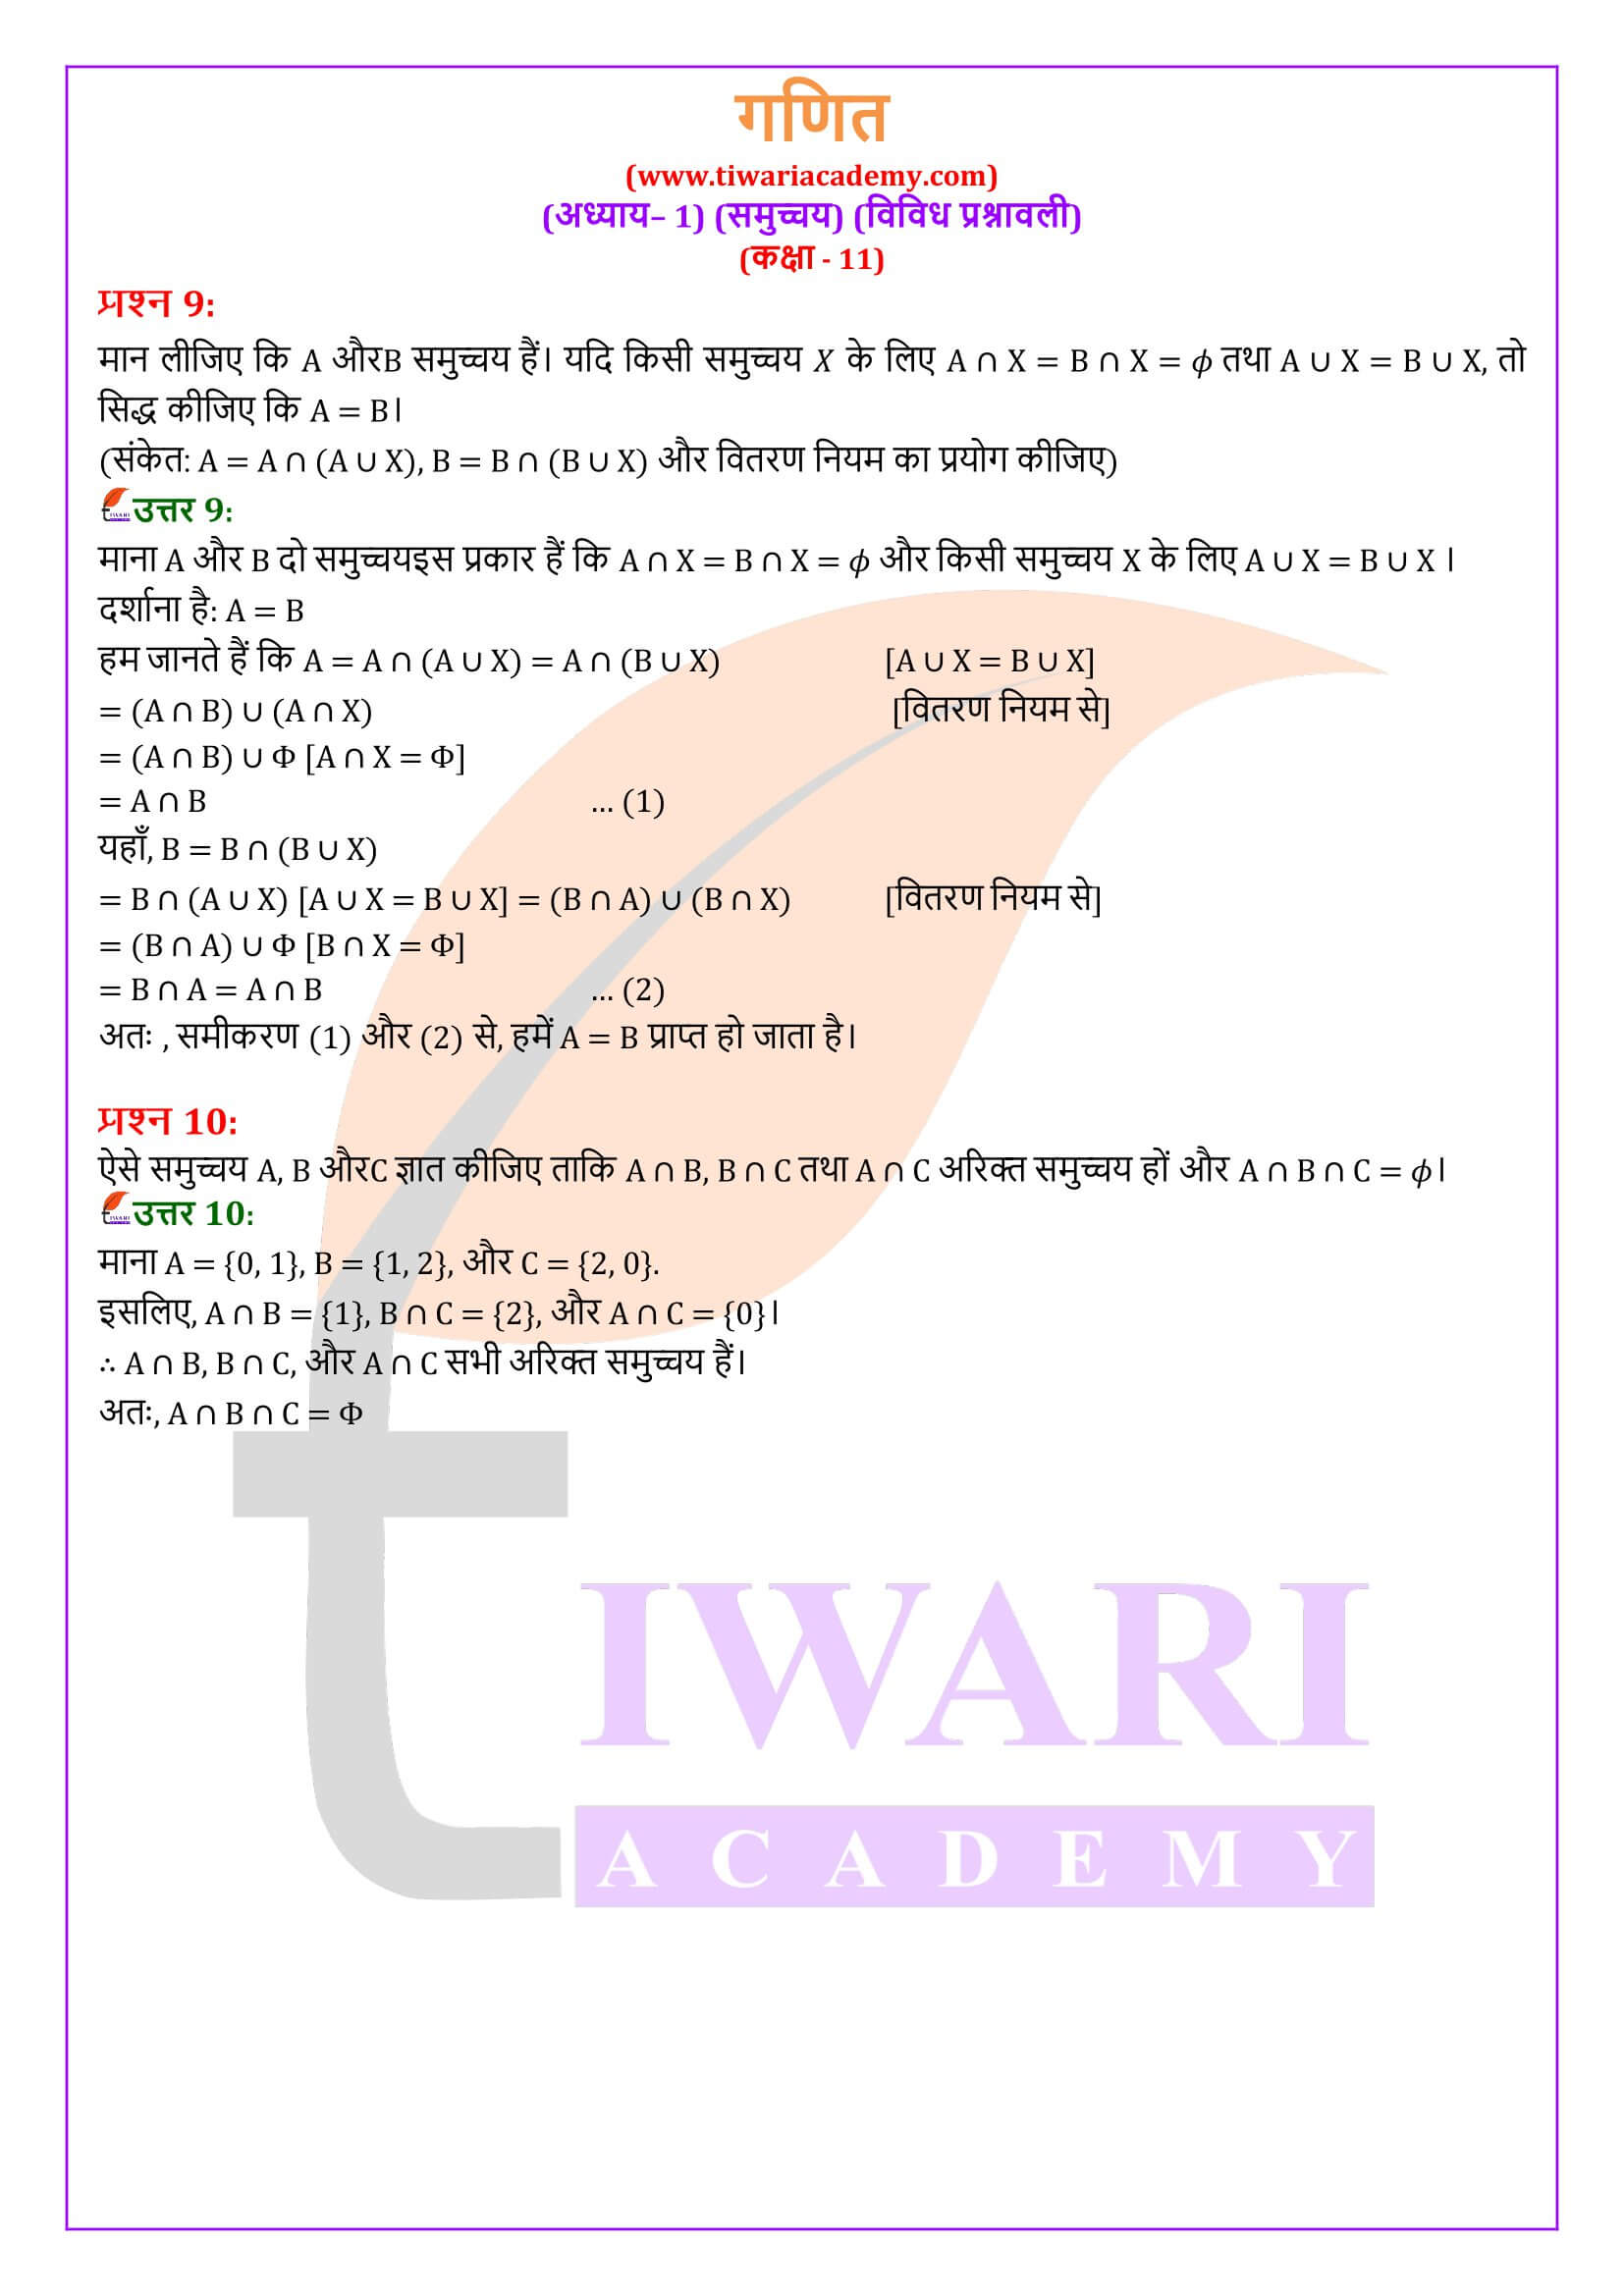 कक्षा 11 गणित अध्याय 1 विविध प्रश्नावली के हल हिंदी में